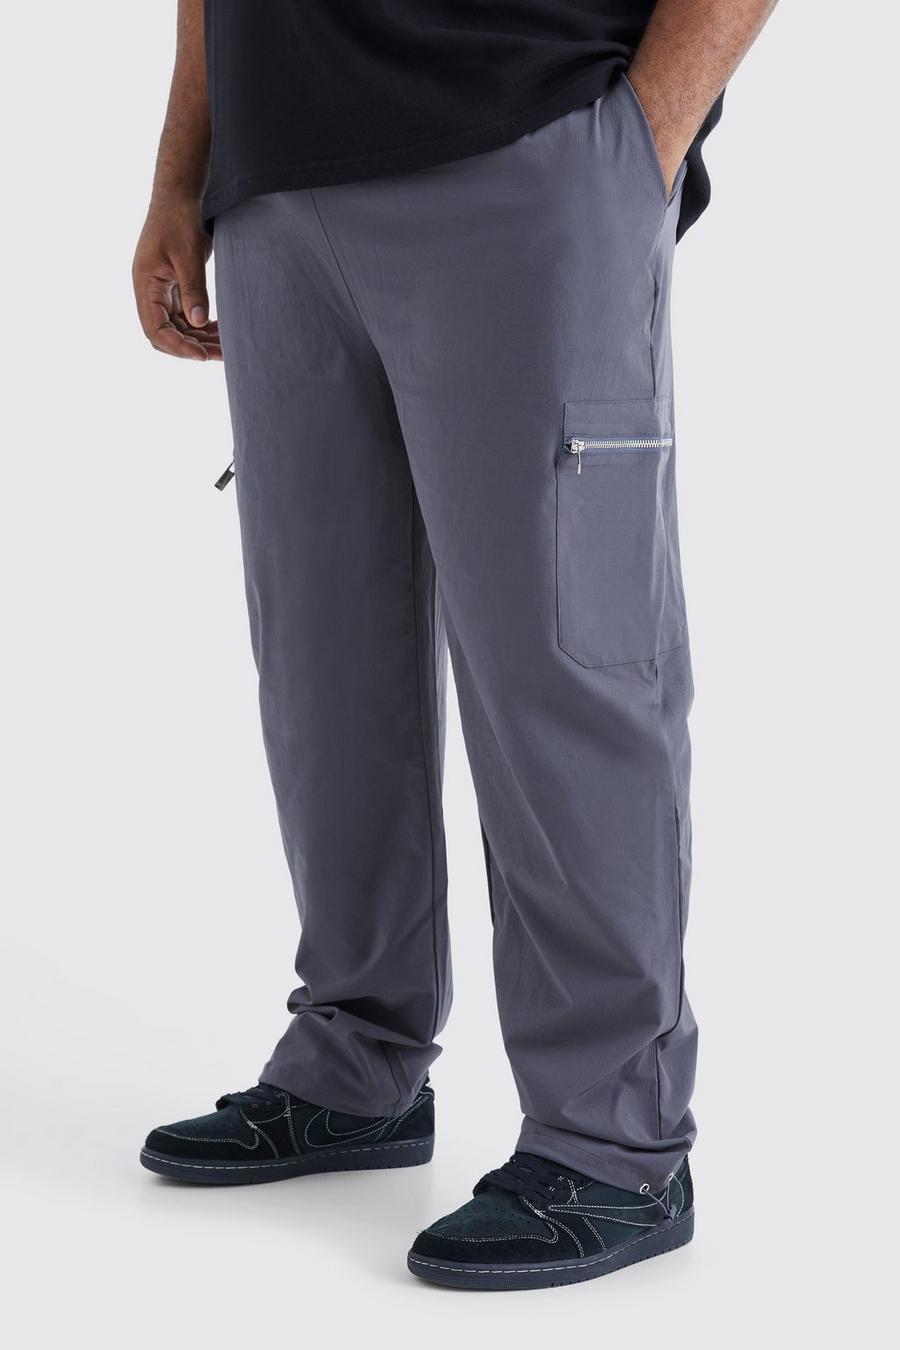 Pantalón Plus cargo ajustado elástico con cintura elástica, Charcoal grigio